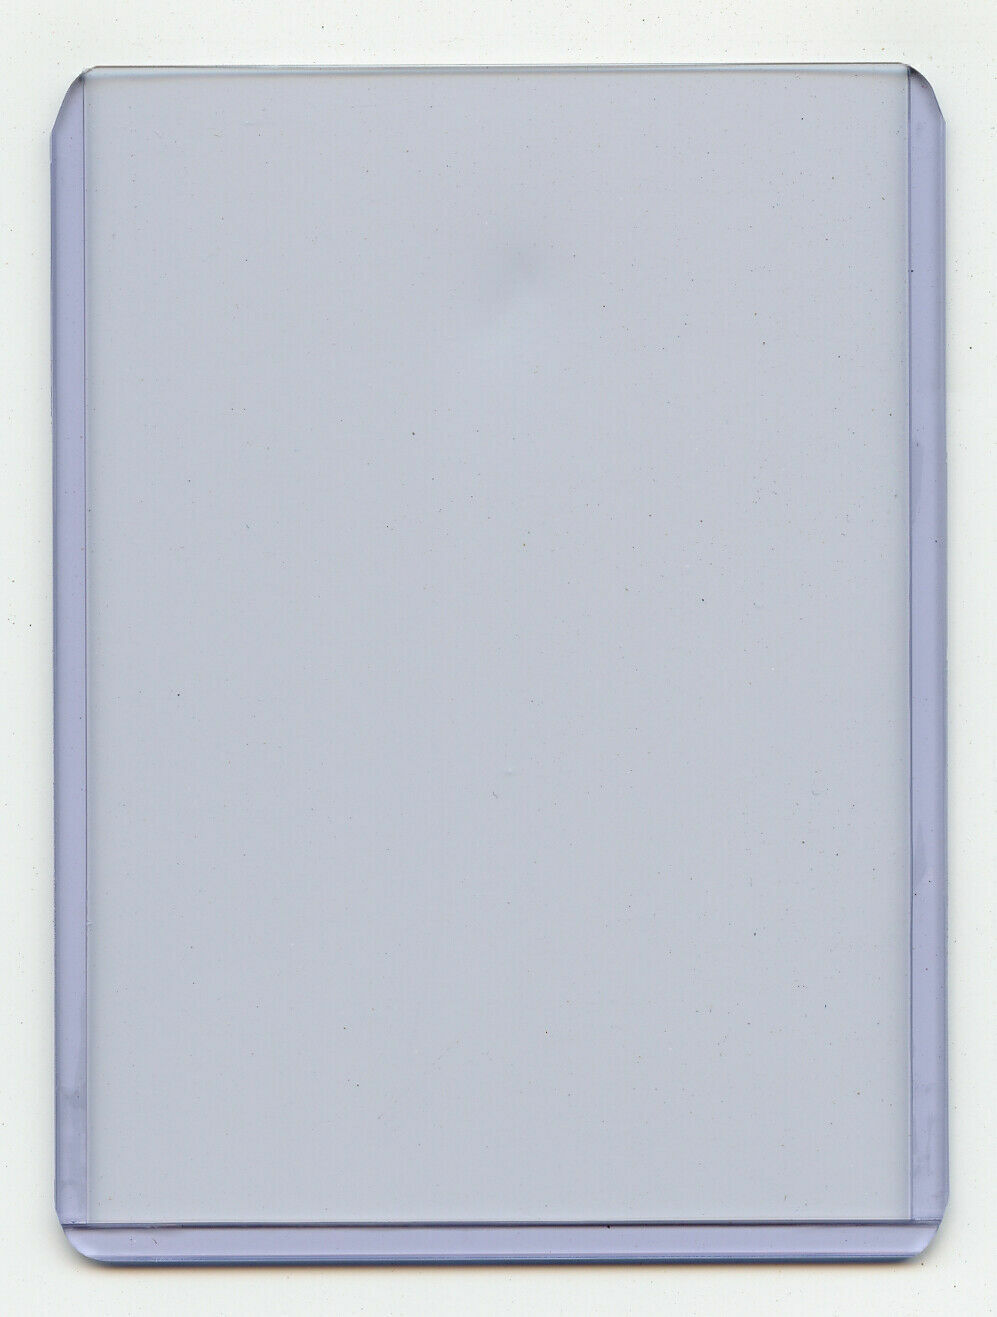 Toploader & Card Sleeves 3in x 4in (10 pack)